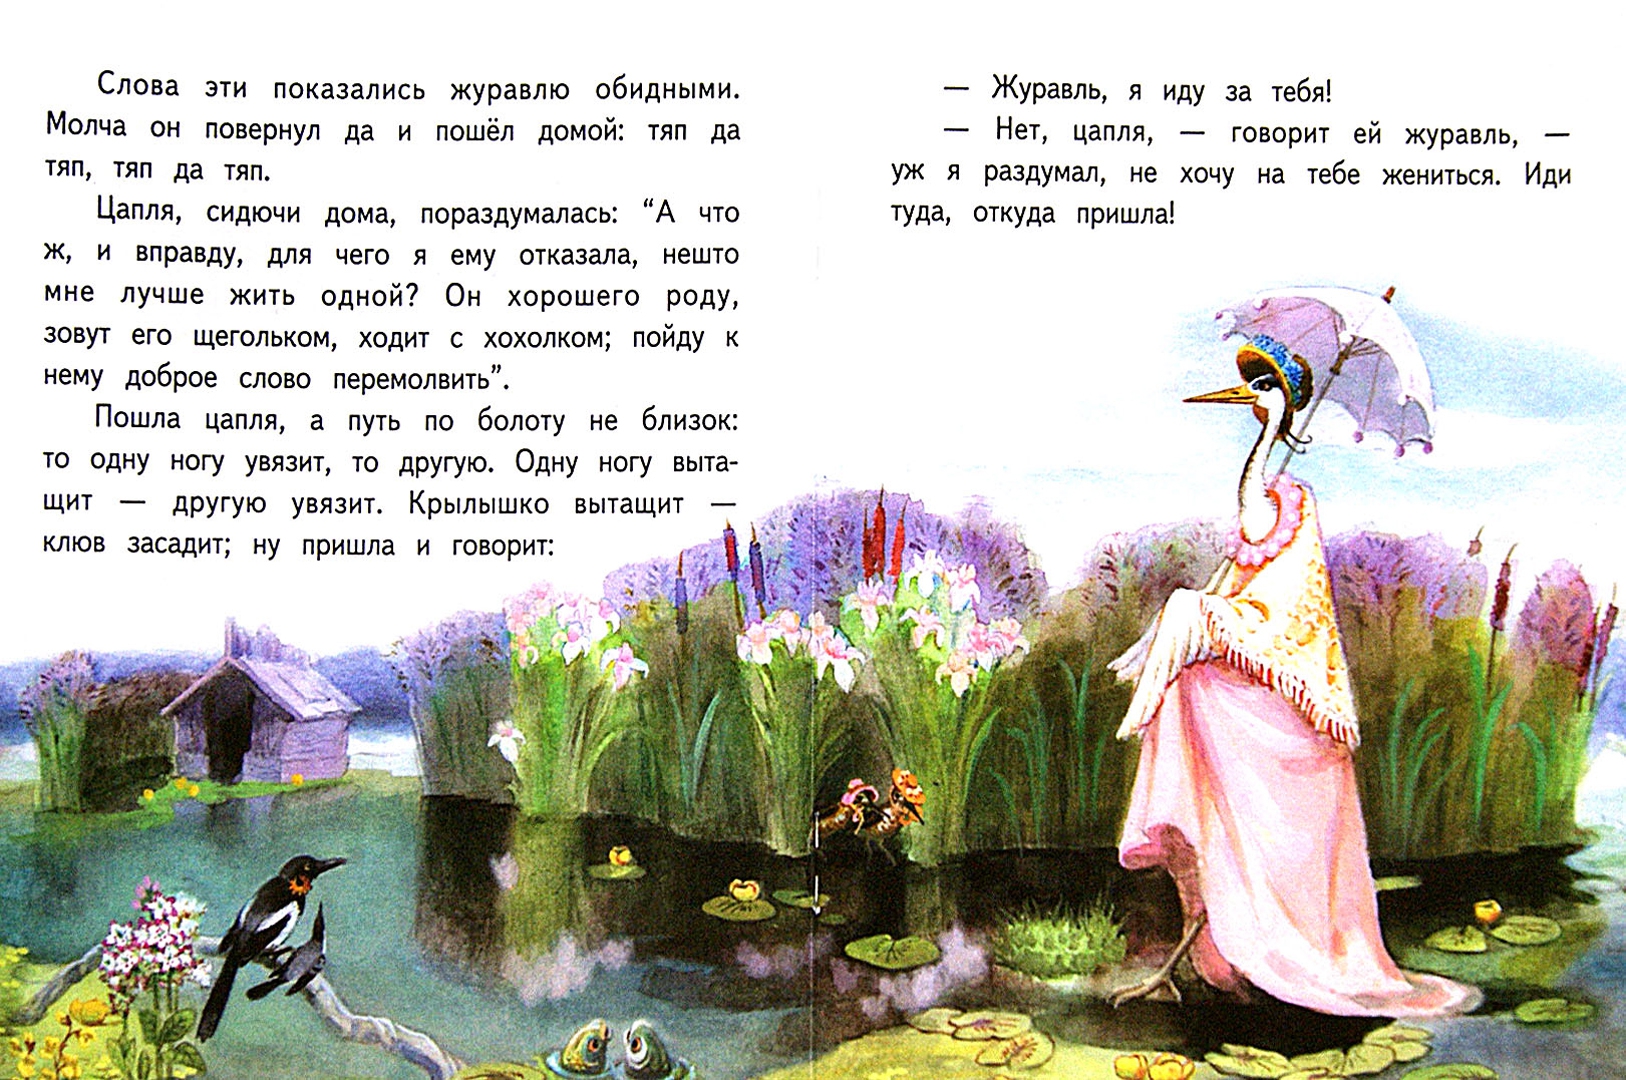 Иллюстрация 1 из 5 для Журавль и цапля - Владимир Даль | Лабиринт - книги. Источник: Лабиринт